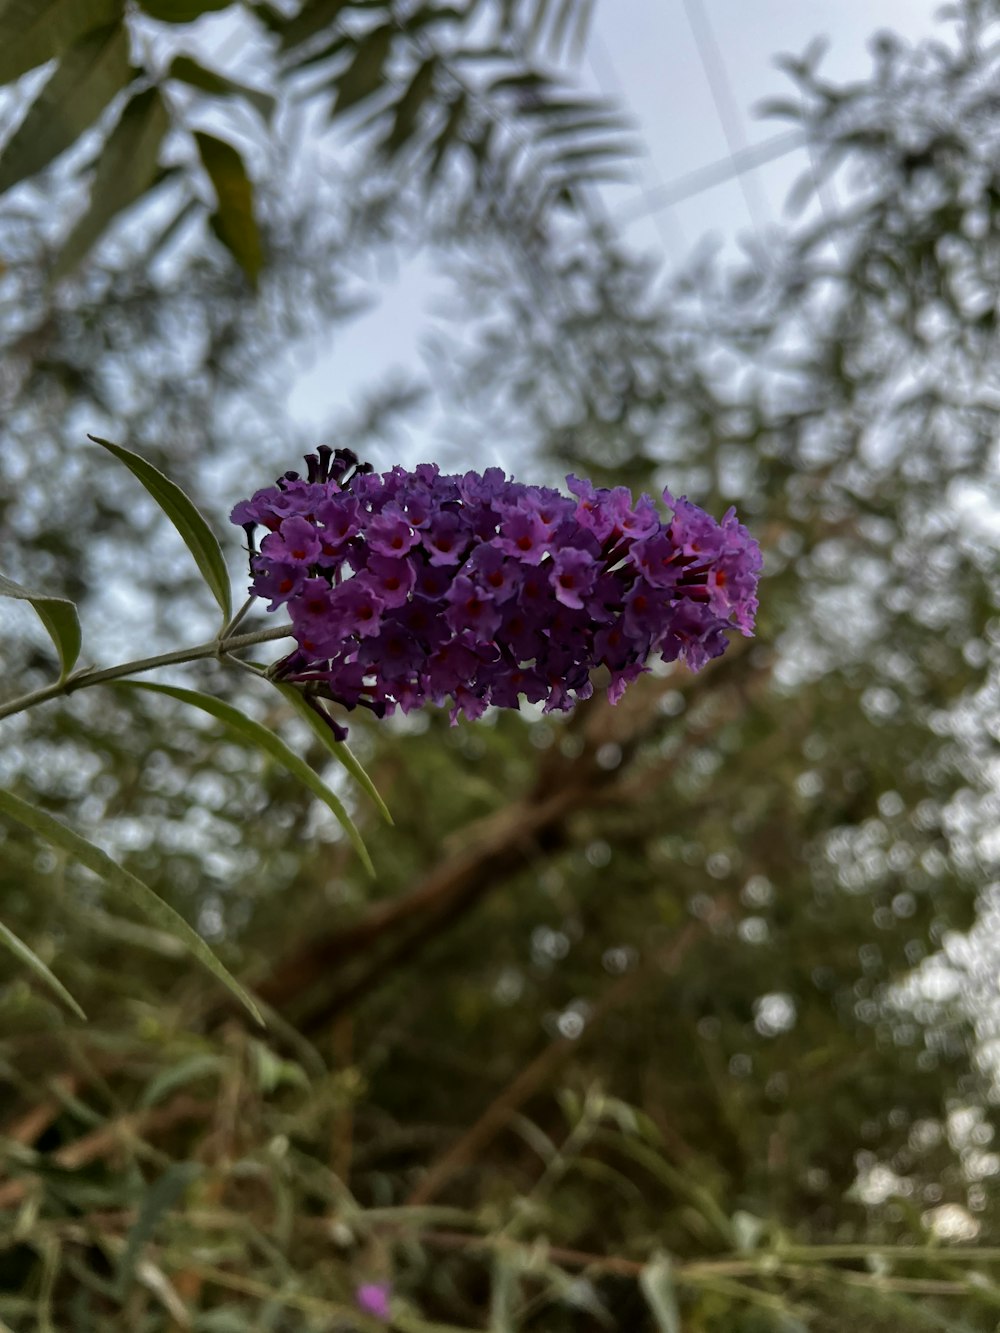 a purple flower on a branch